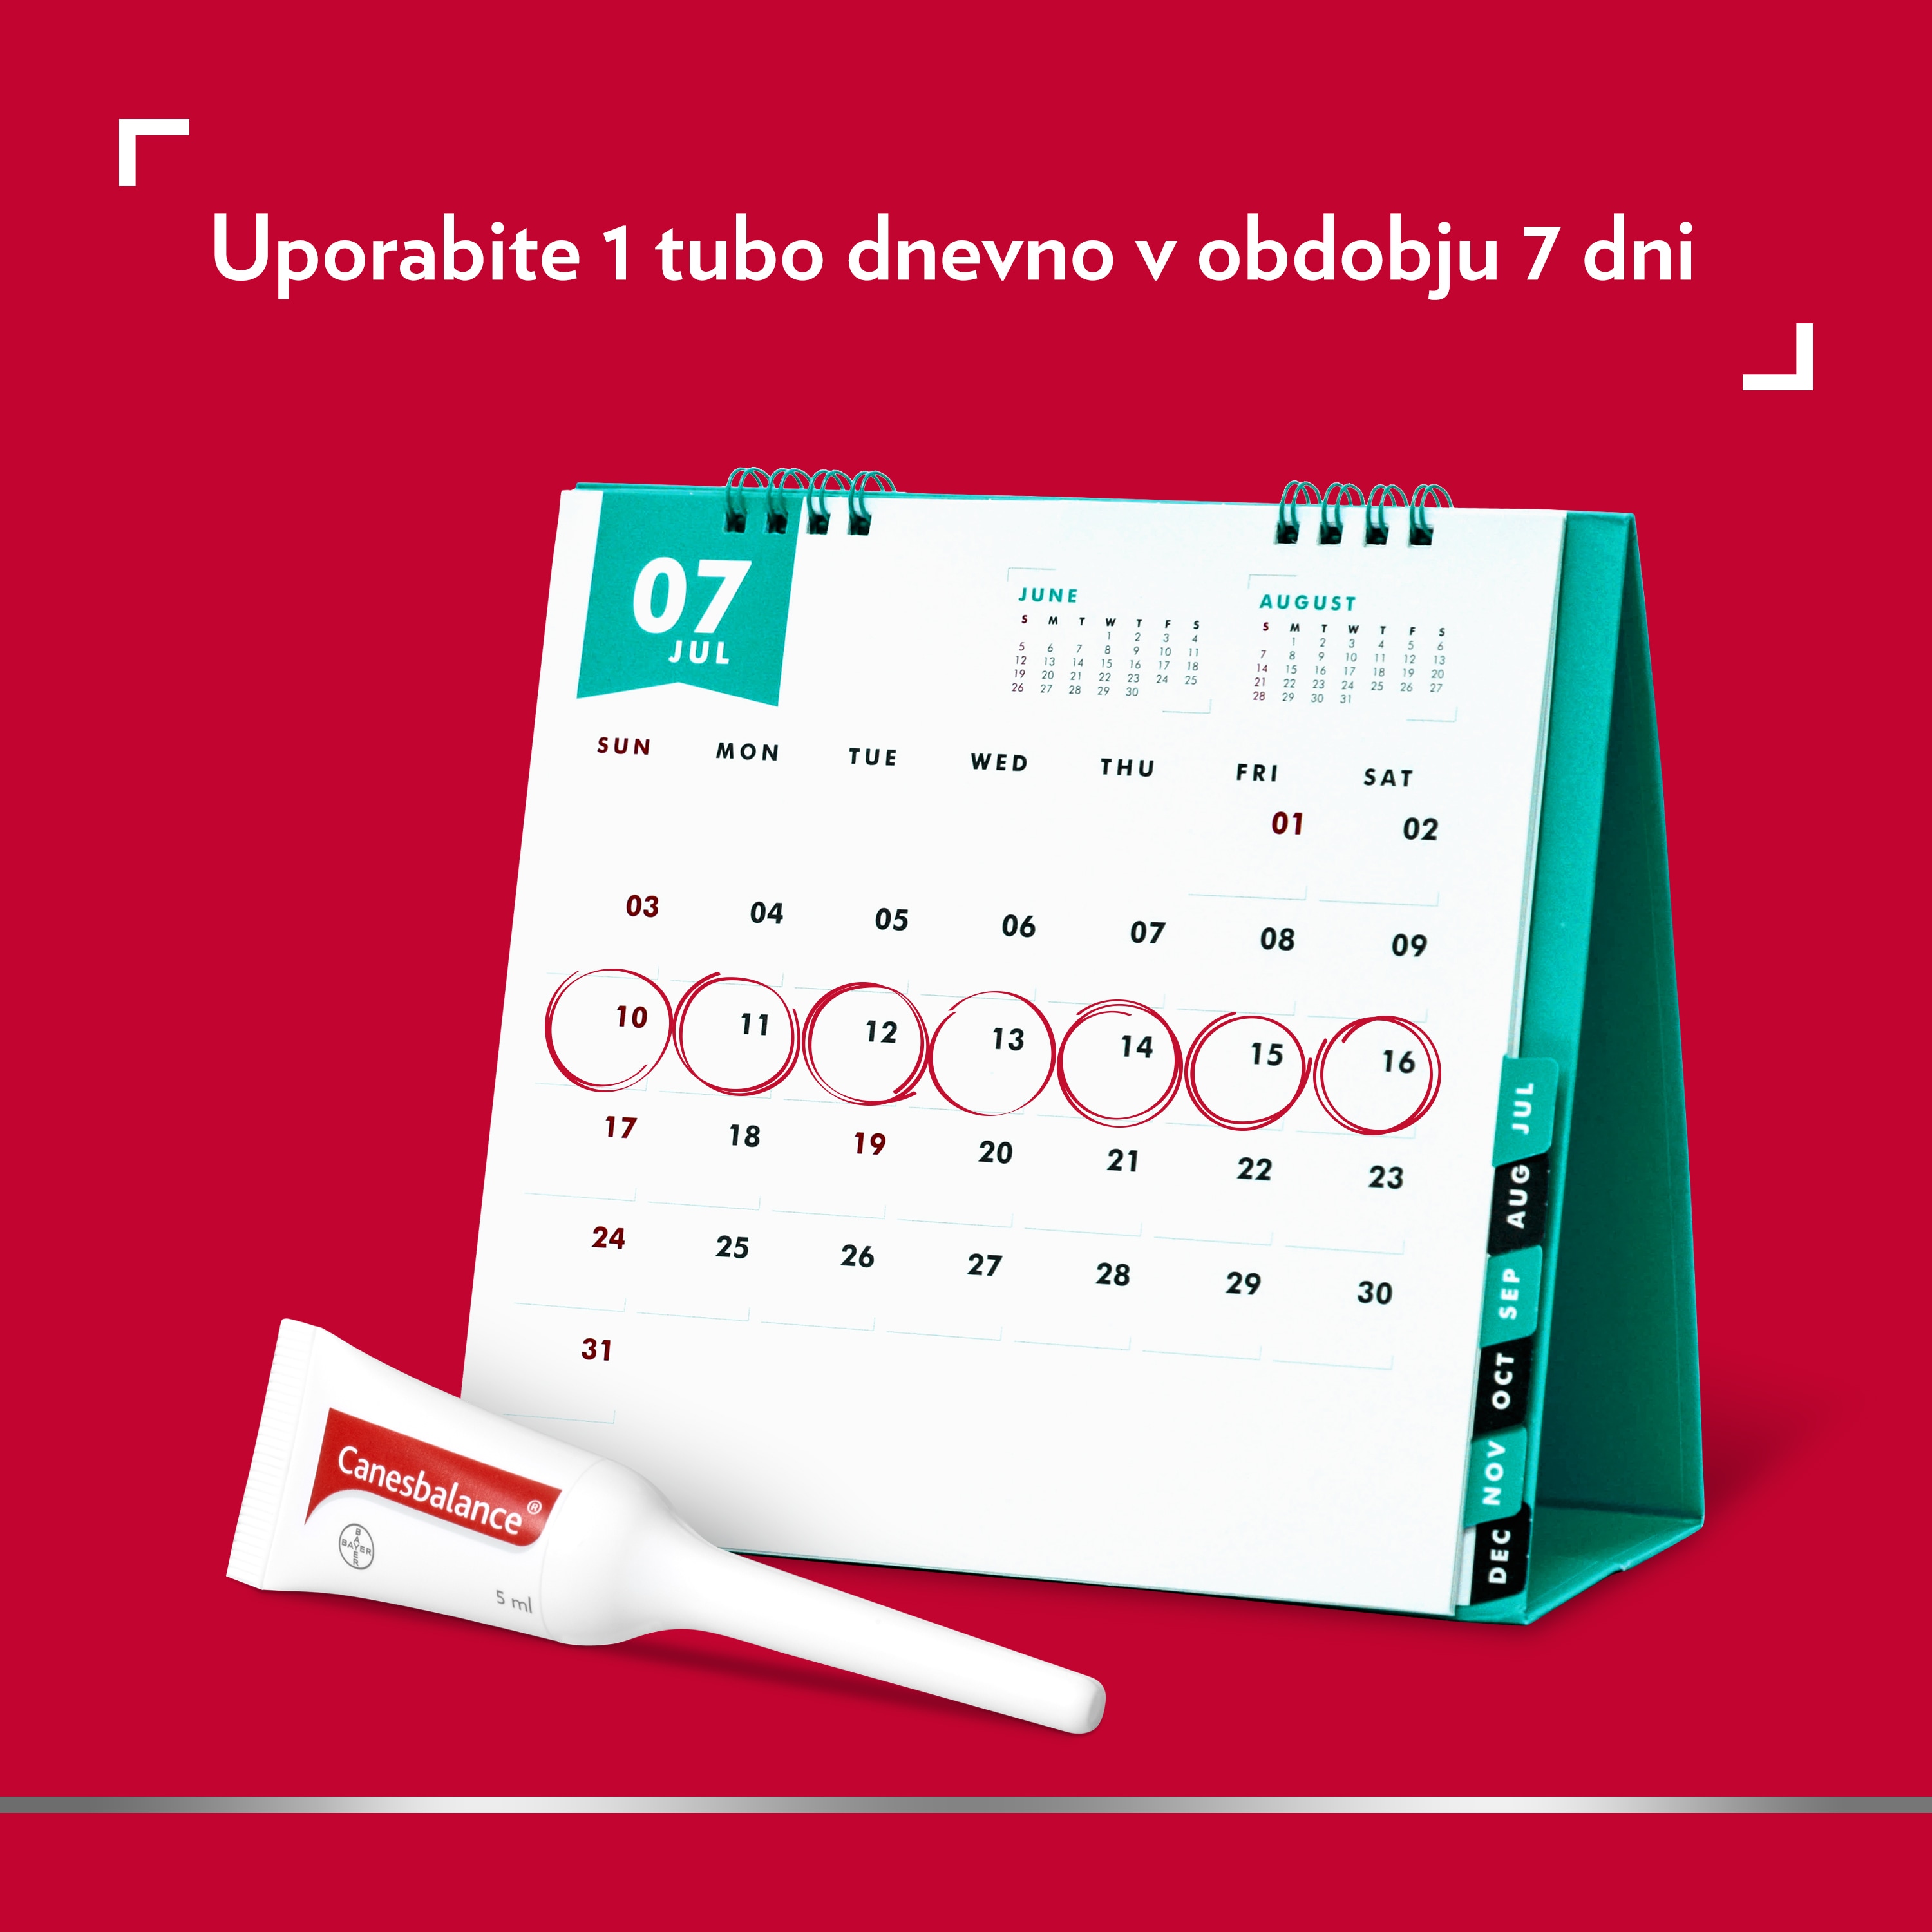 Slika namiznega koledarja s Canesbalance aplikatorjem in napisom na vrhu: »Uporabite 1 tubo dnevno v obdobju 7 dni«